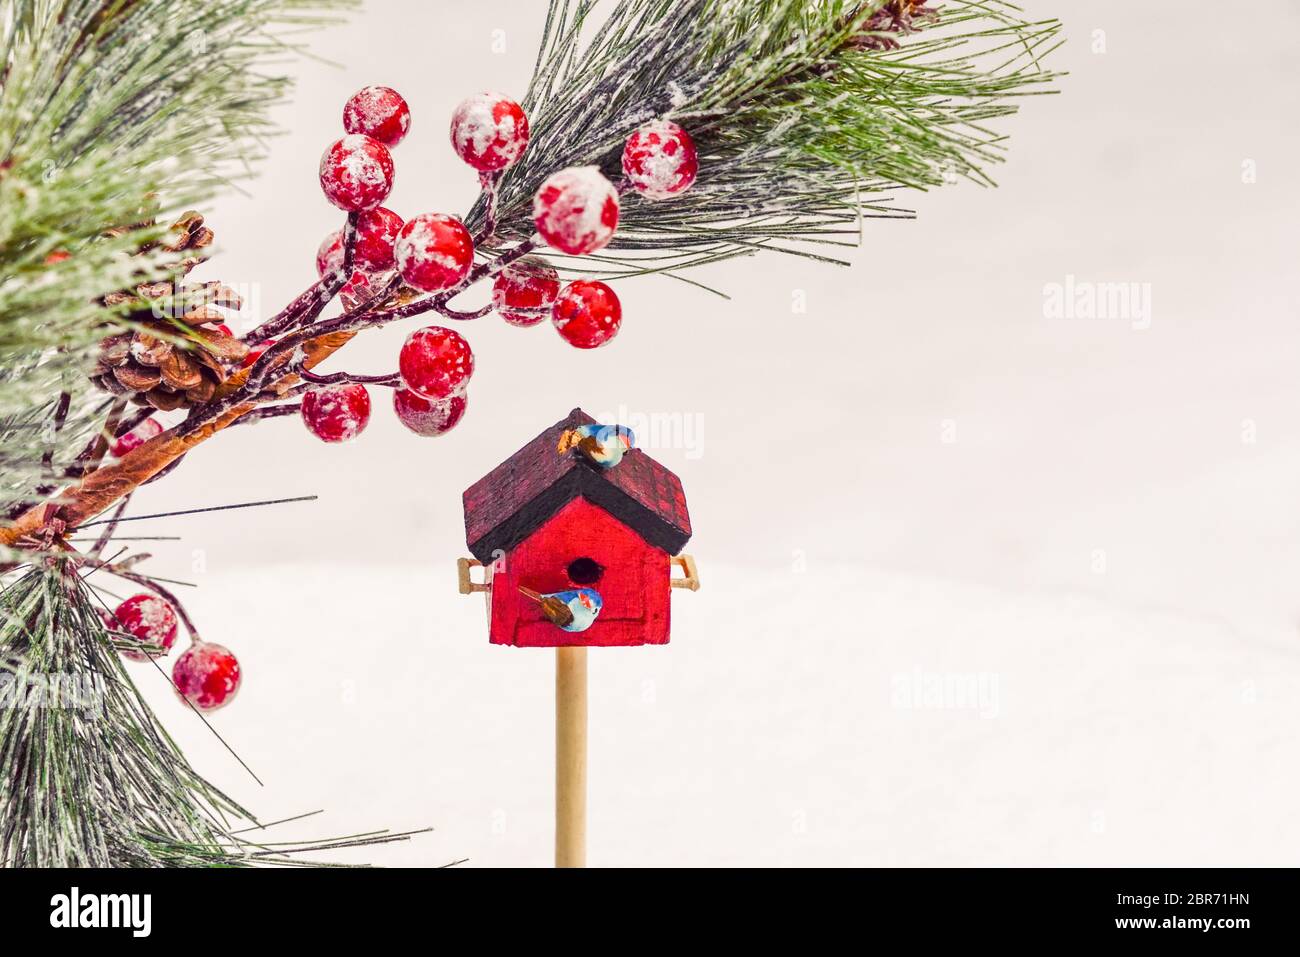 Neve fresca caduta sullo sfondo con falsi rami di pino, bacche e due uccelli arroccati su una piccola casa di uccelli rossi Foto Stock